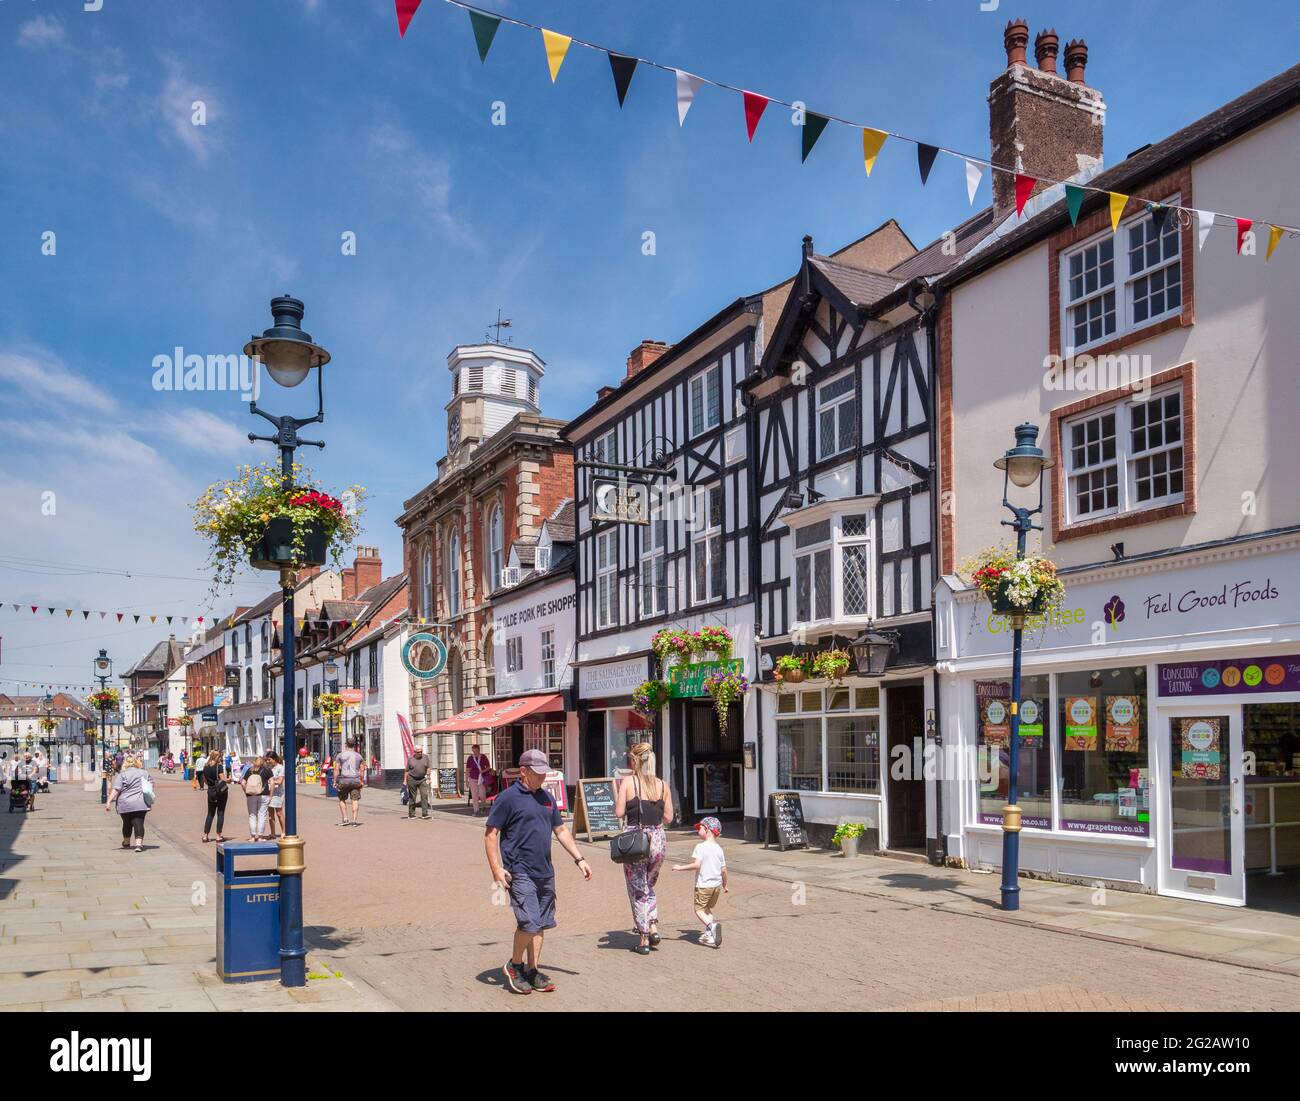 4 luglio 2019: Melton Mowbray, Leicestershire, UK - la gente che acquista in Nottingham Street in una calda giornata estiva. Foto Stock